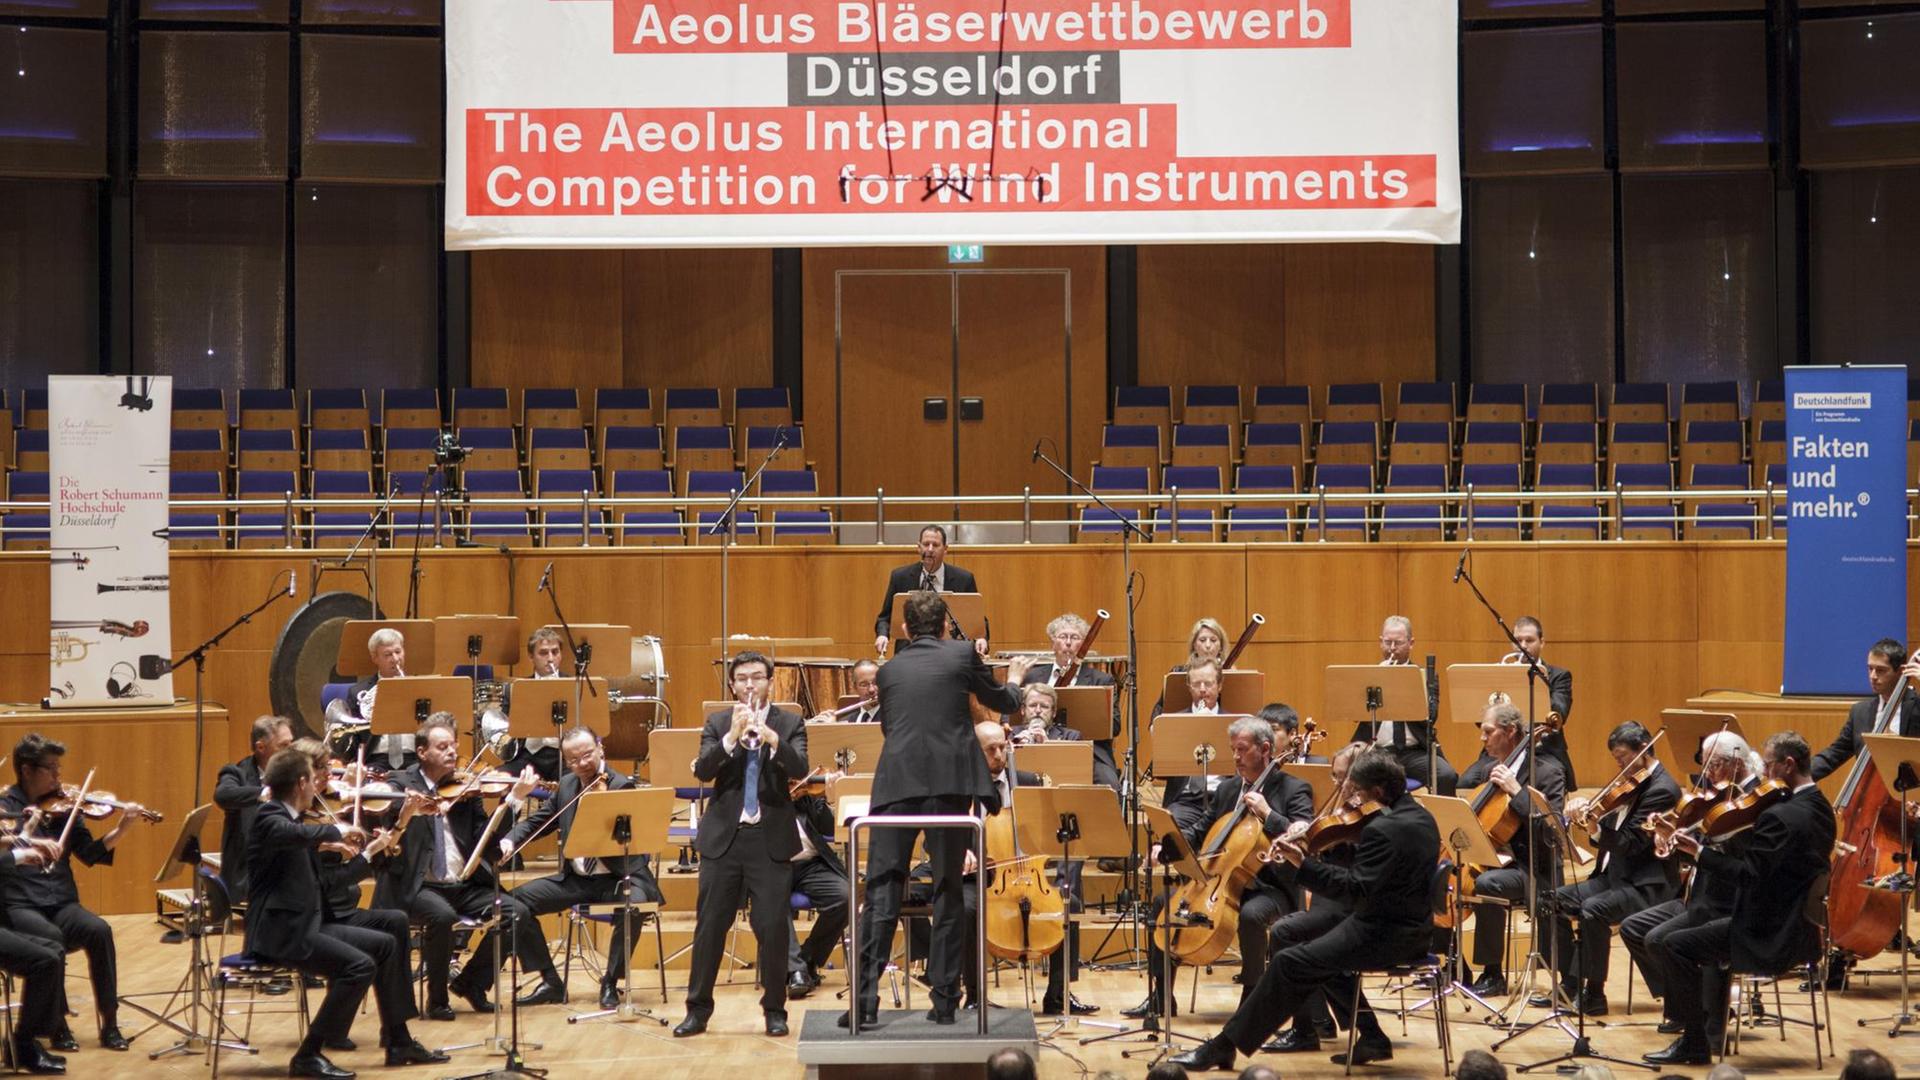 Der Trompeter Tom Poulson spielt beim Finale des Aeolus Bläserwettbwerbs 2013 mit den Düsseldorfer Symphonikern.